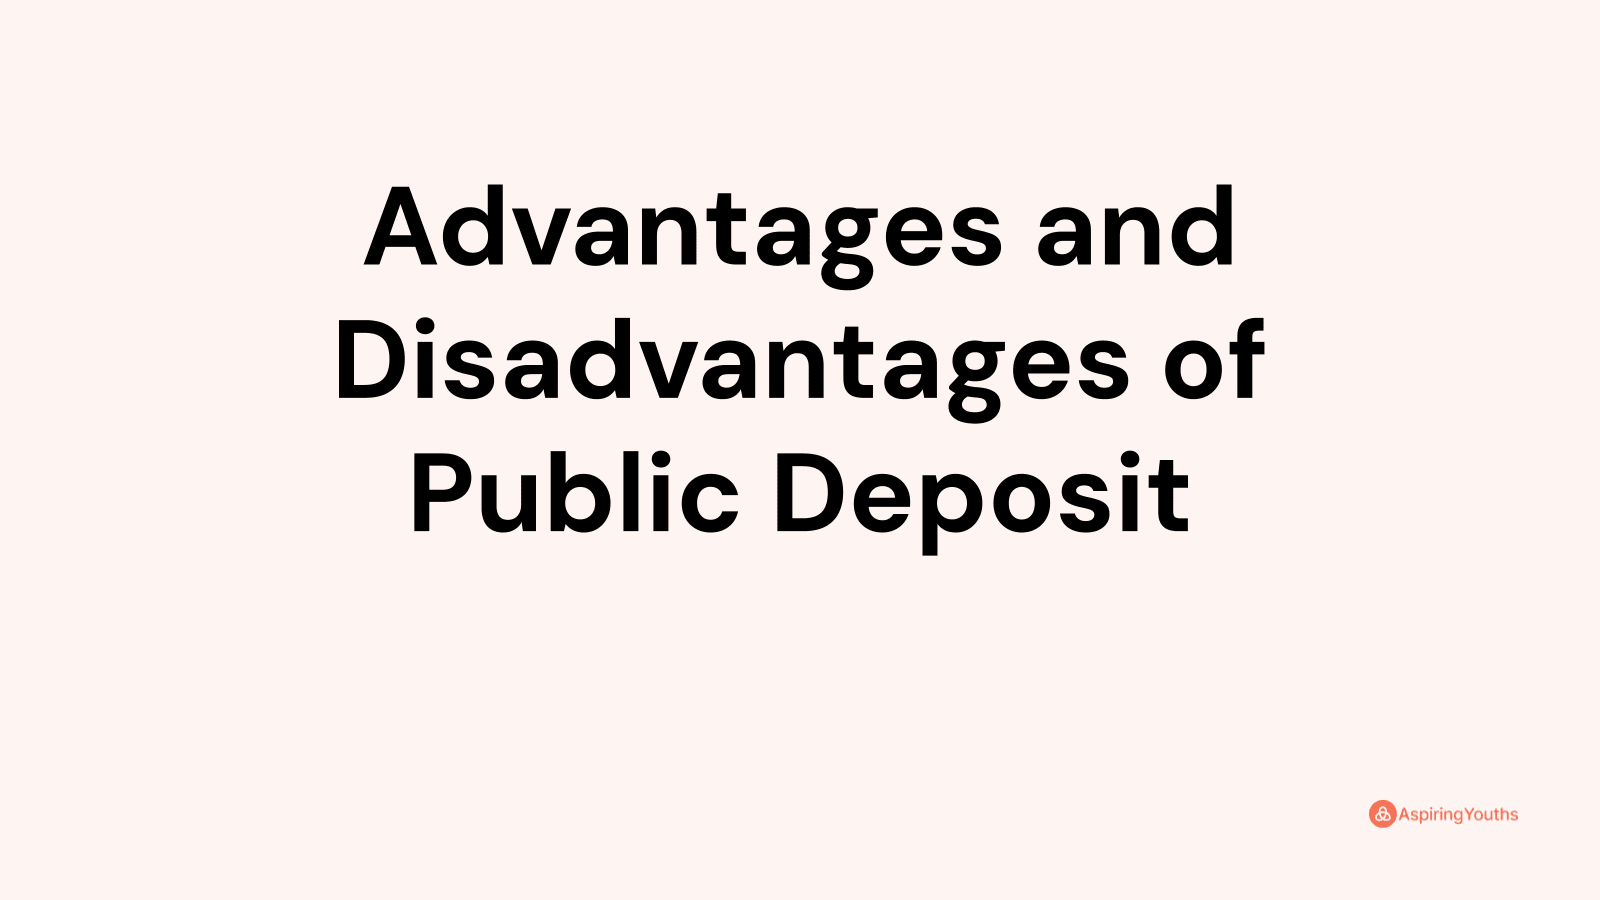 Advantages and disadvantages of Public Deposit